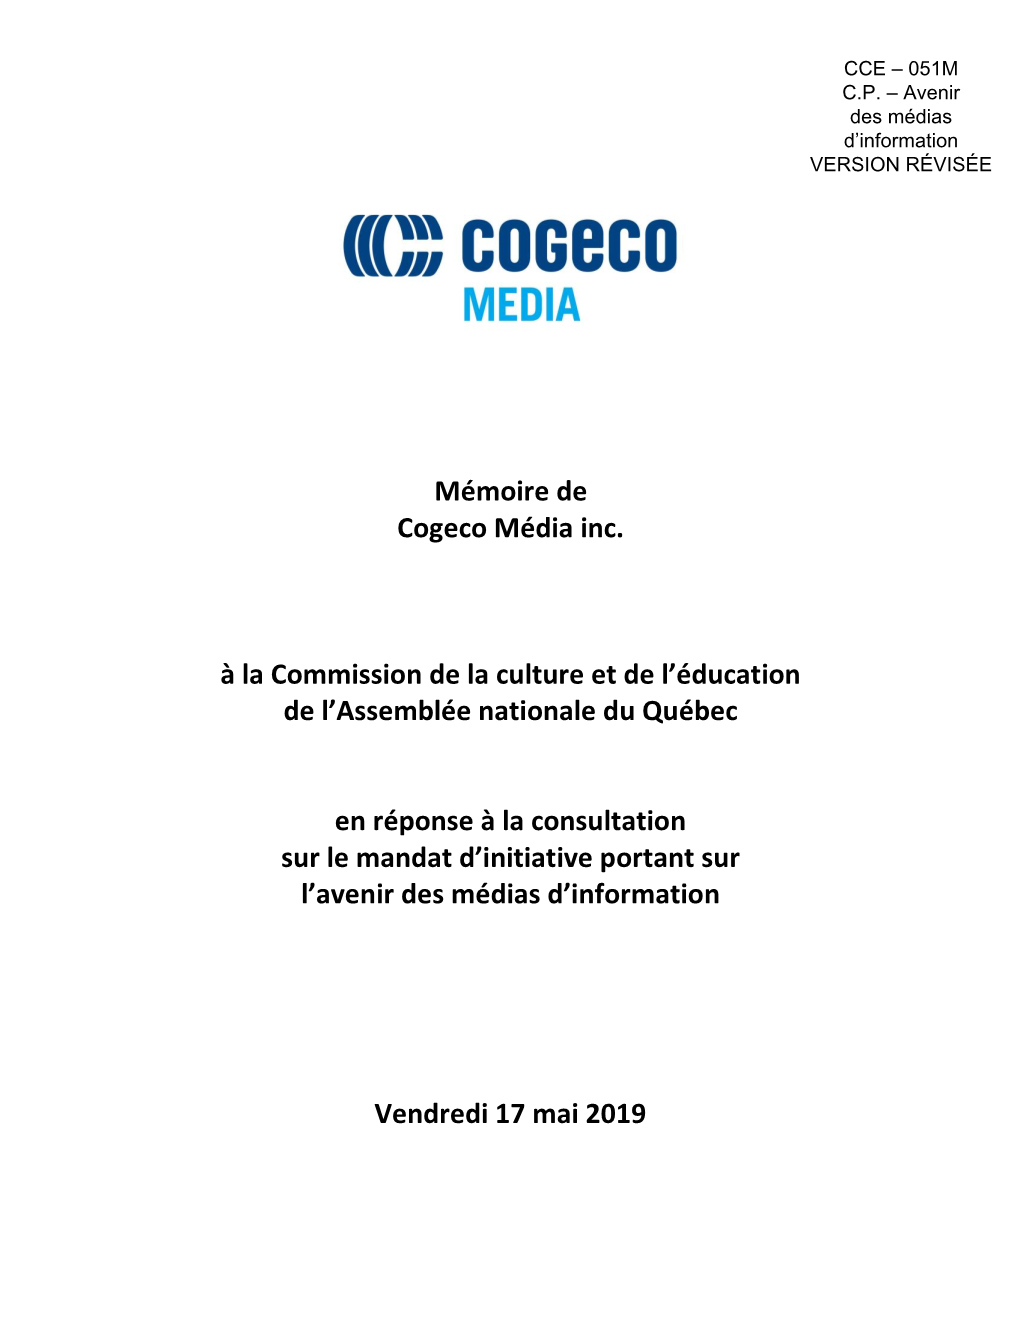 Cogeco Média Inc